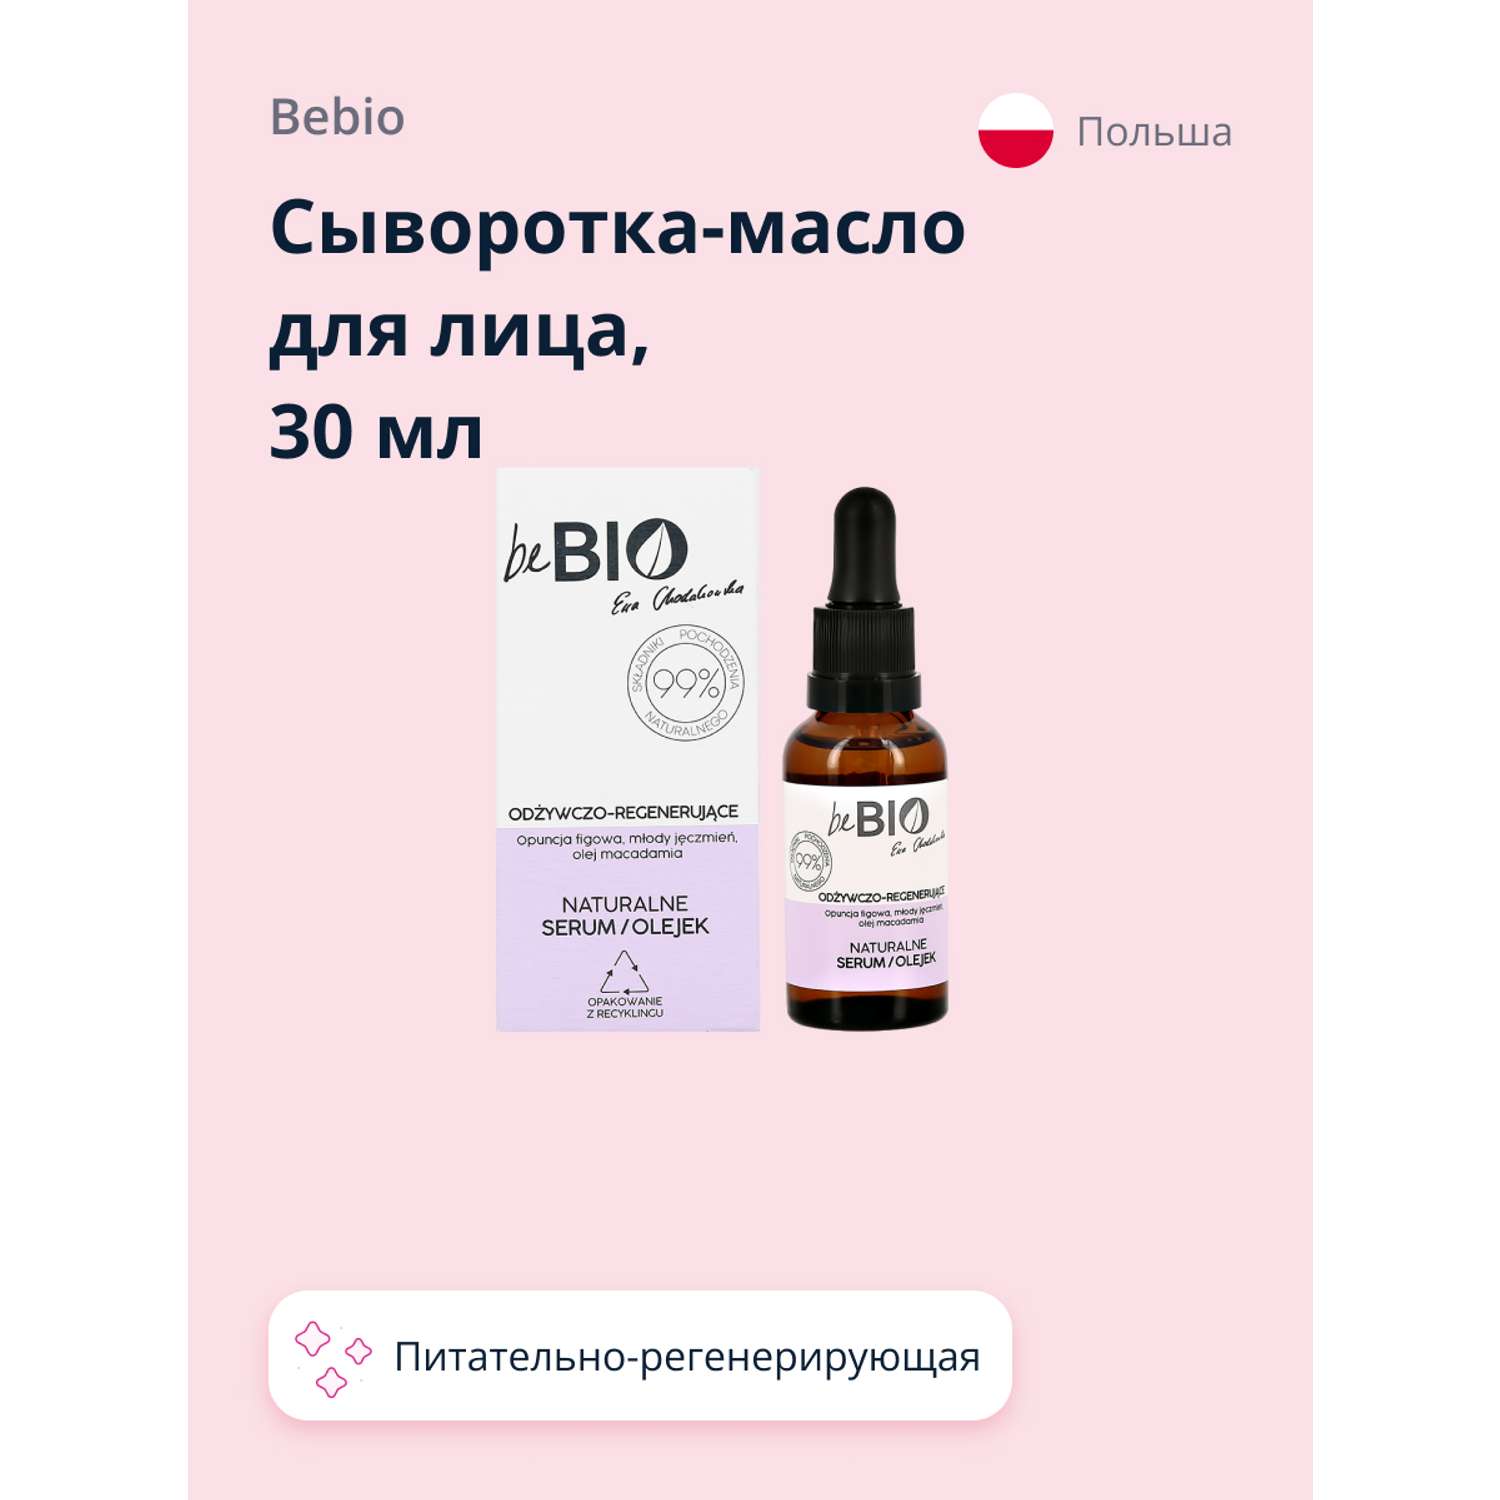 Сыворотка-масло для лица beBio питательно-регенерирующая 30 мл - фото 4